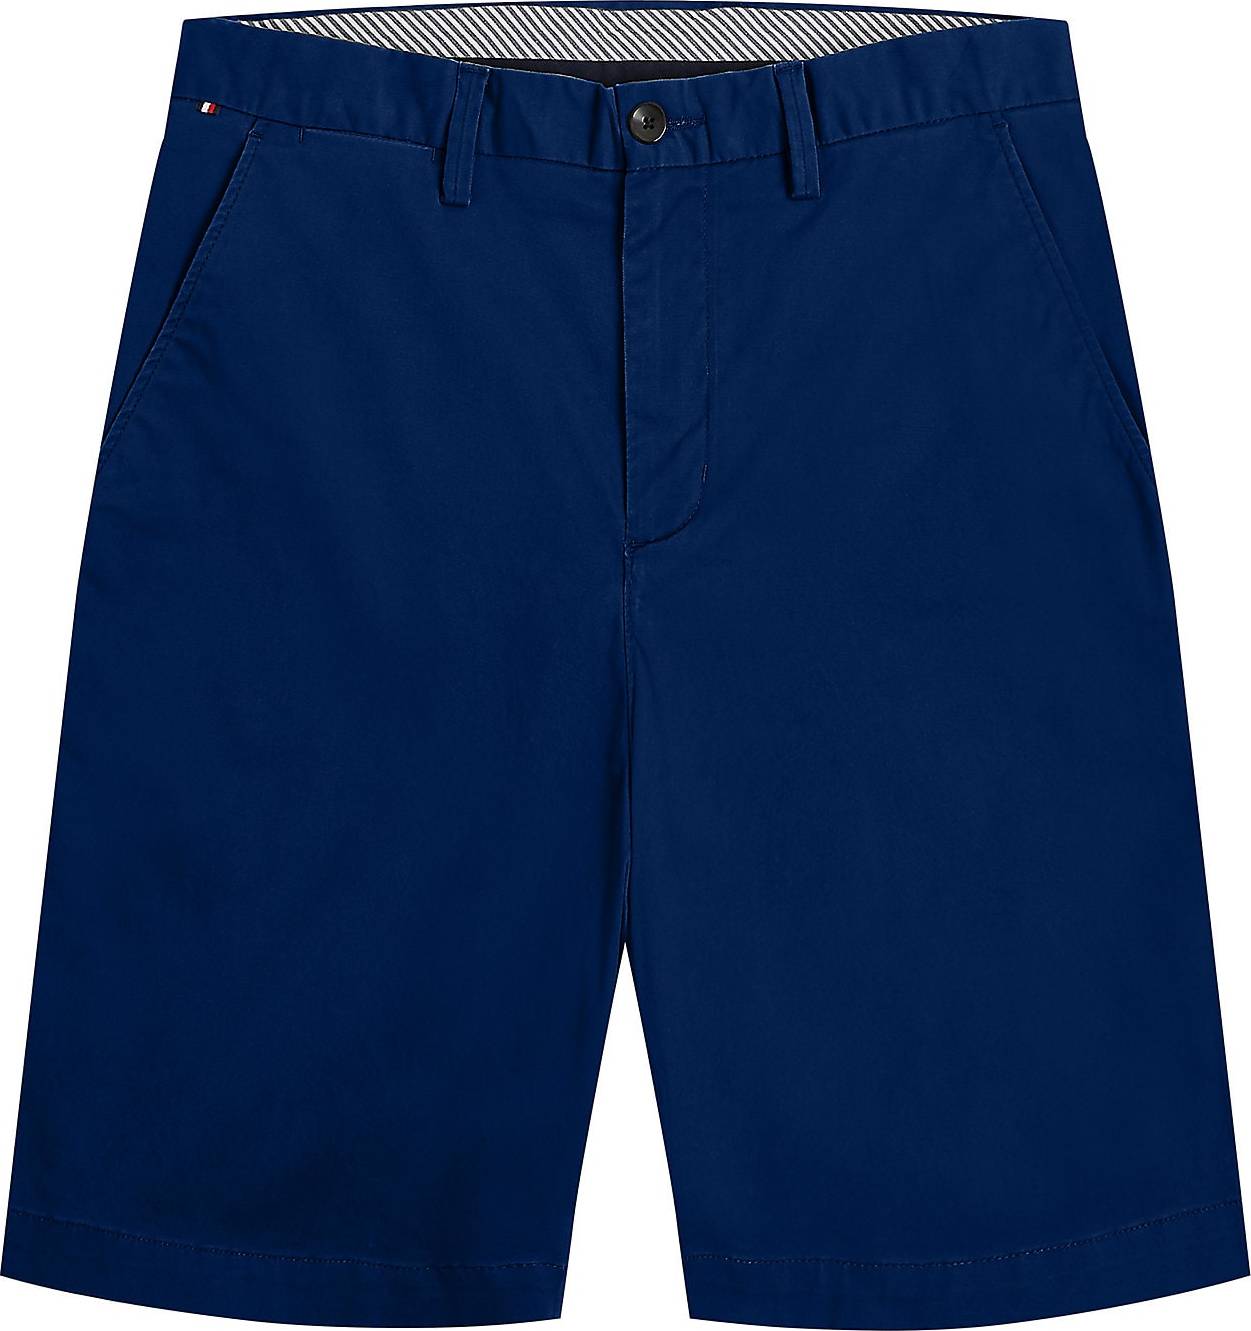 TOMMY HILFIGER Chino kalhoty 'Harlem' marine modrá